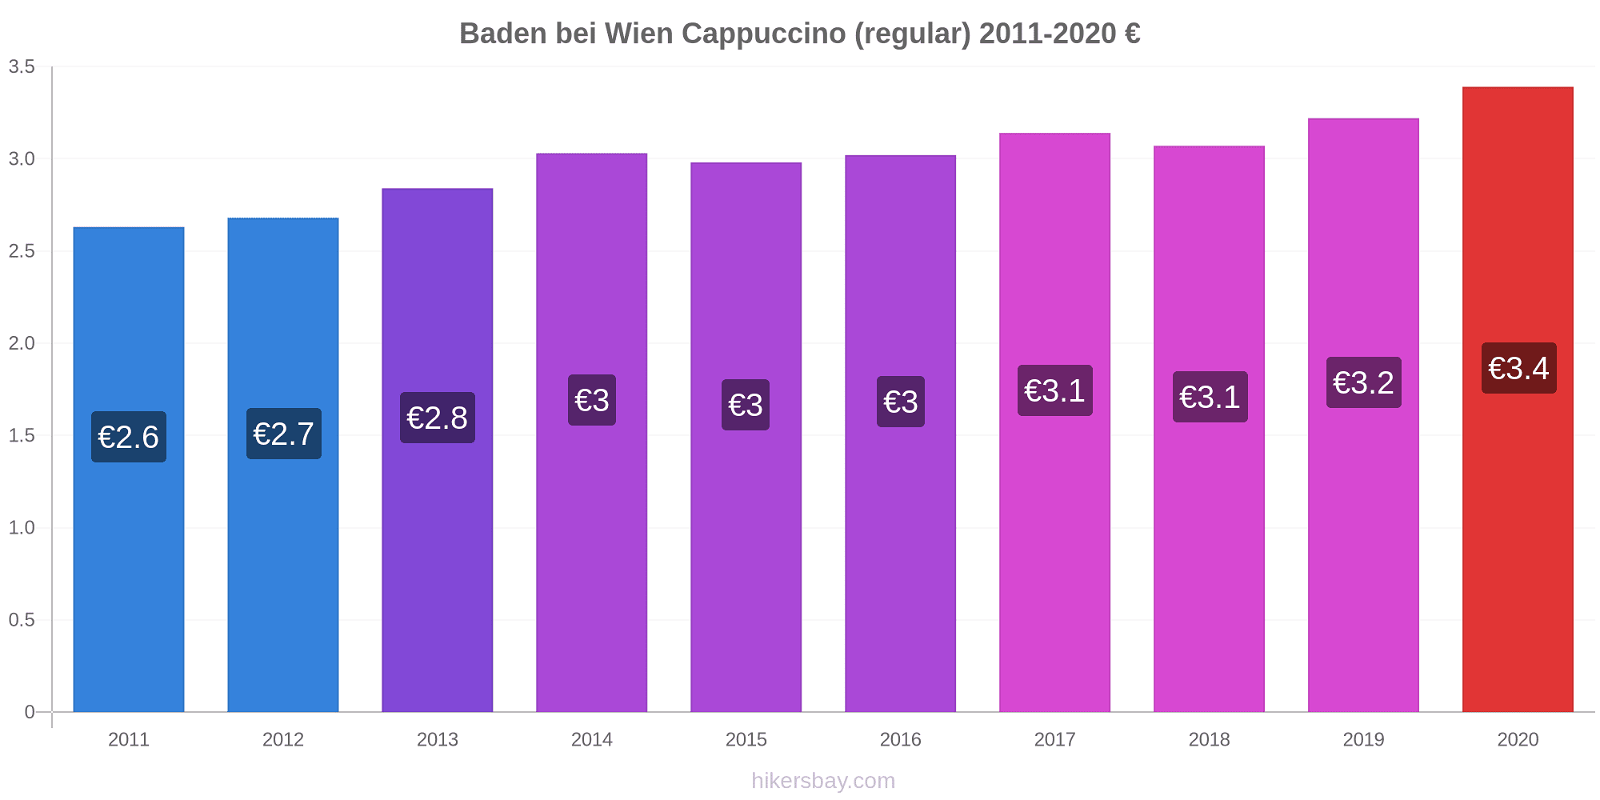 Baden bei Wien price changes Cappuccino (regular) hikersbay.com